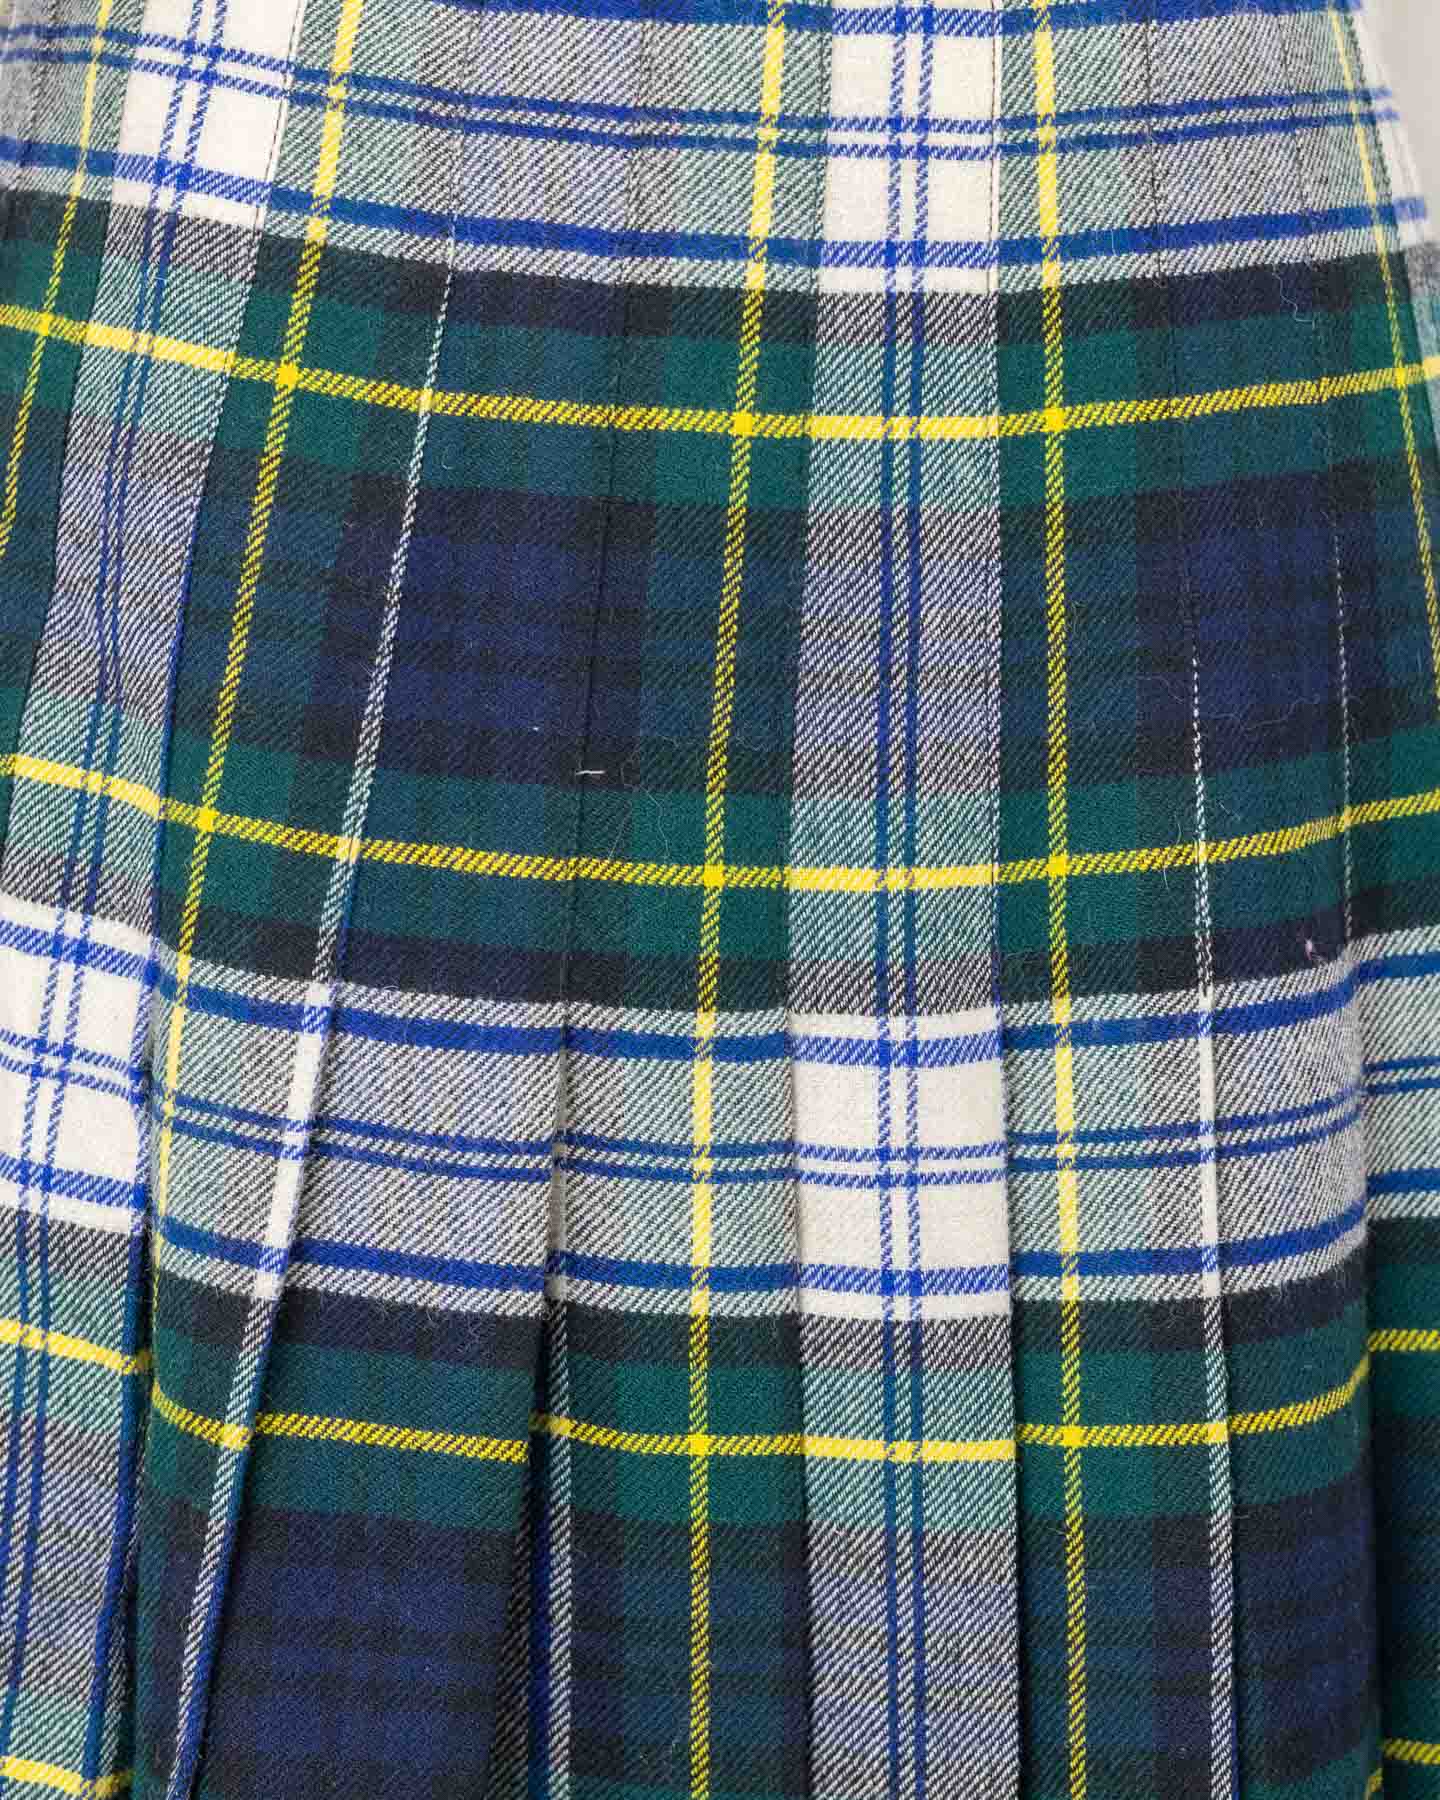 Saia Kilt vintage verde e azul tamanho 38 - feita na Escócia